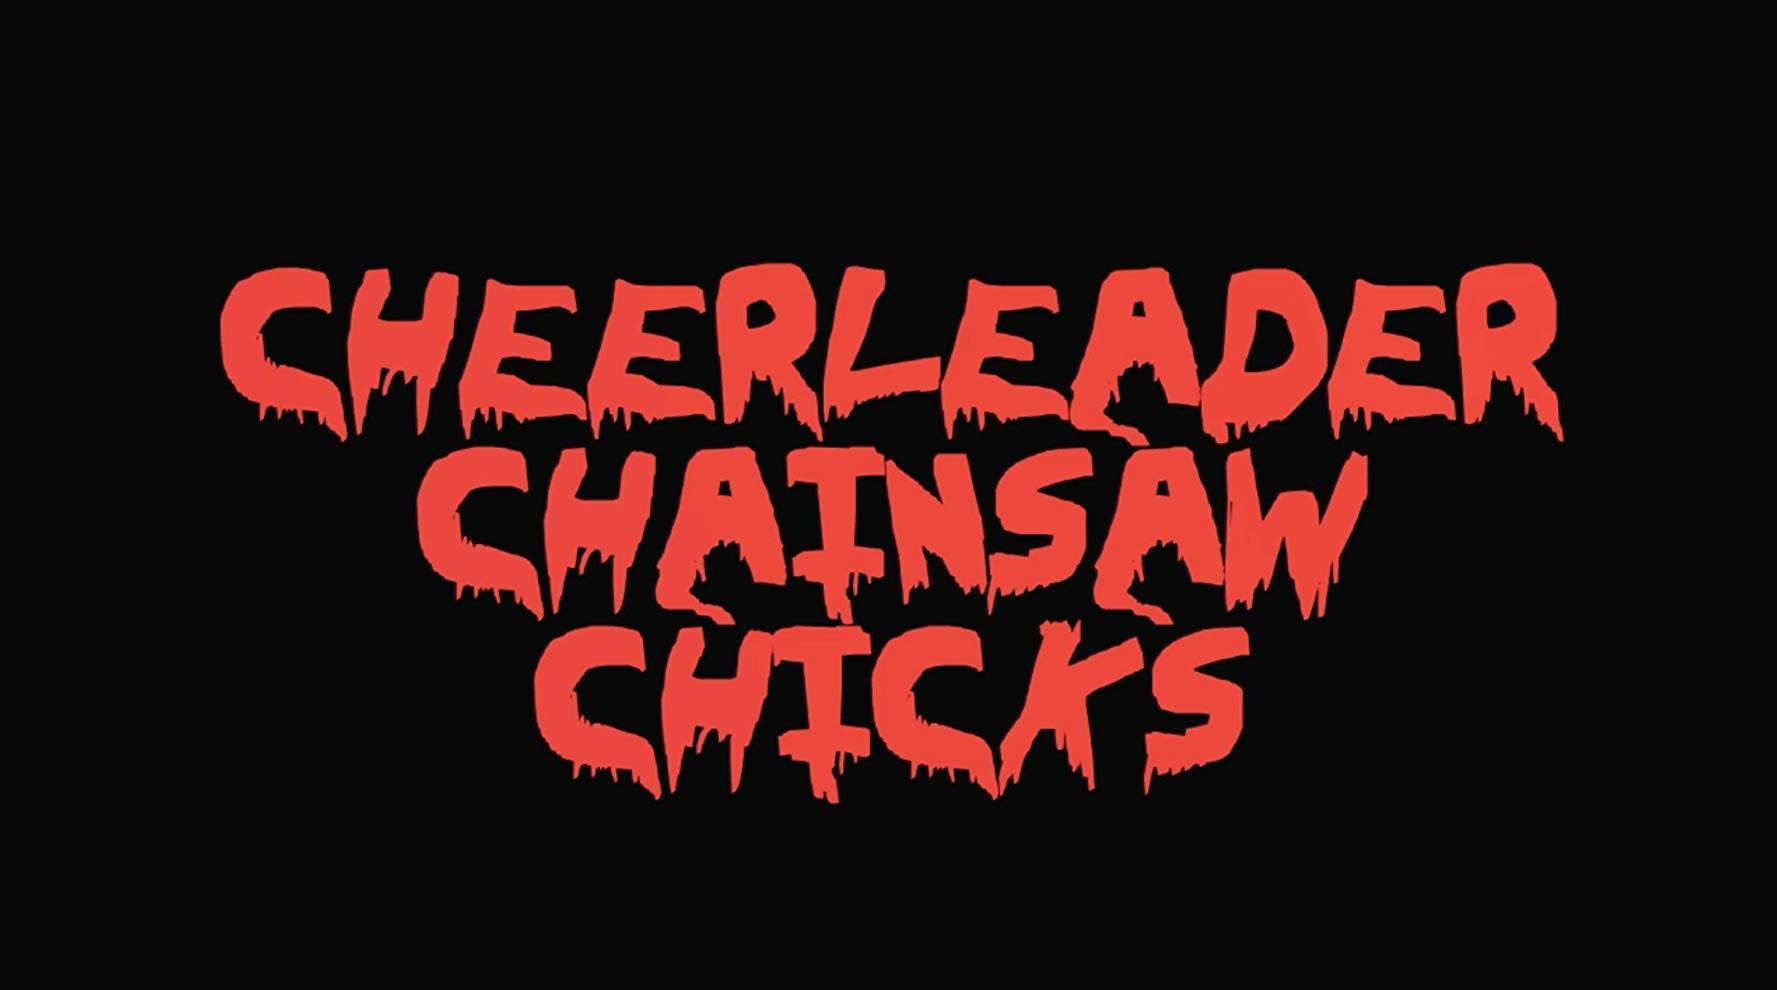 مشاهدة فيلم Cheerleader Chainsaw Chicks (2018) مترجم